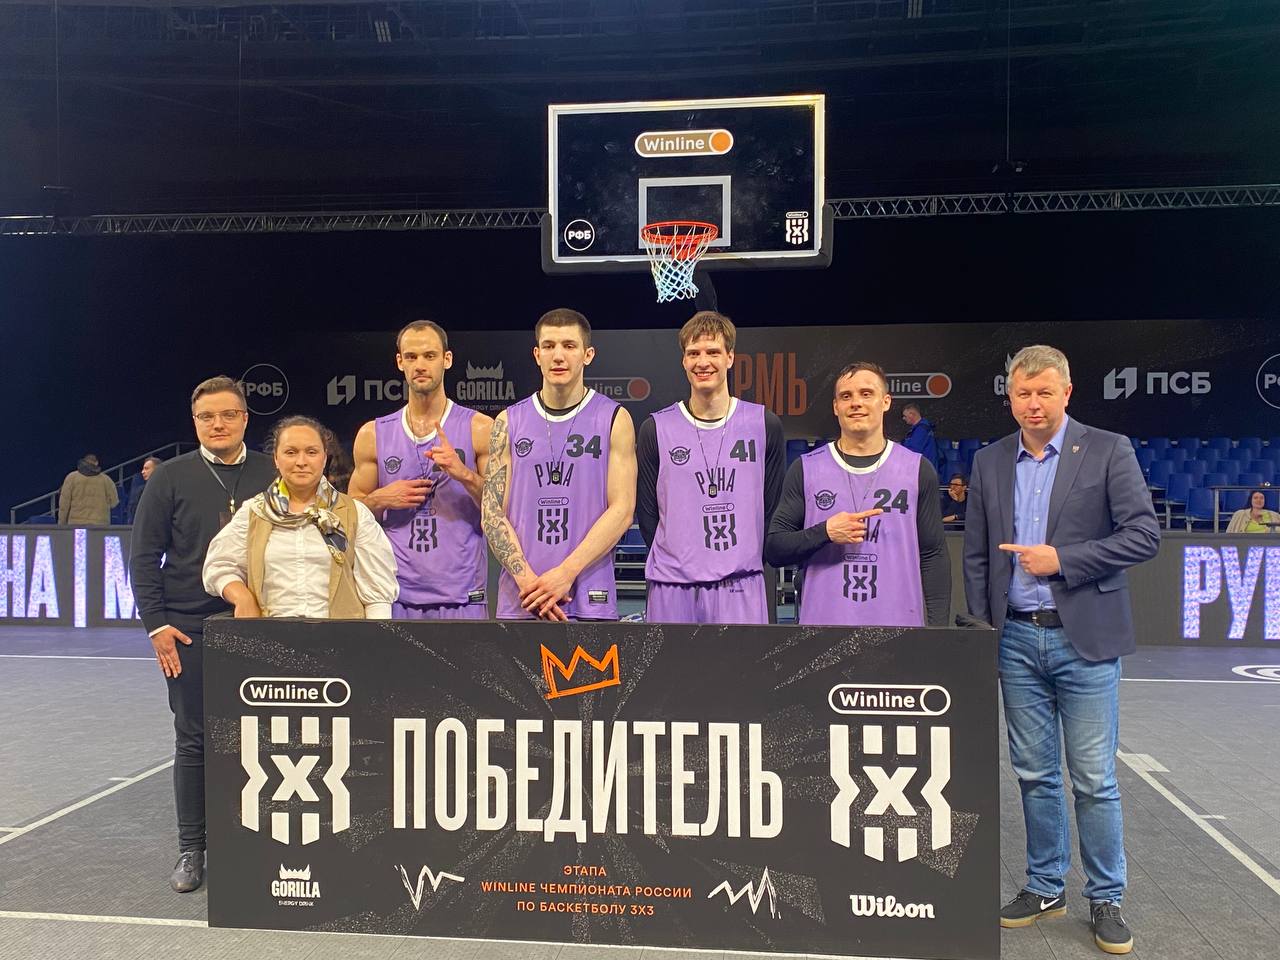 Определены финалисты Чемпионата России по баскетболу 3x3, рис. 5